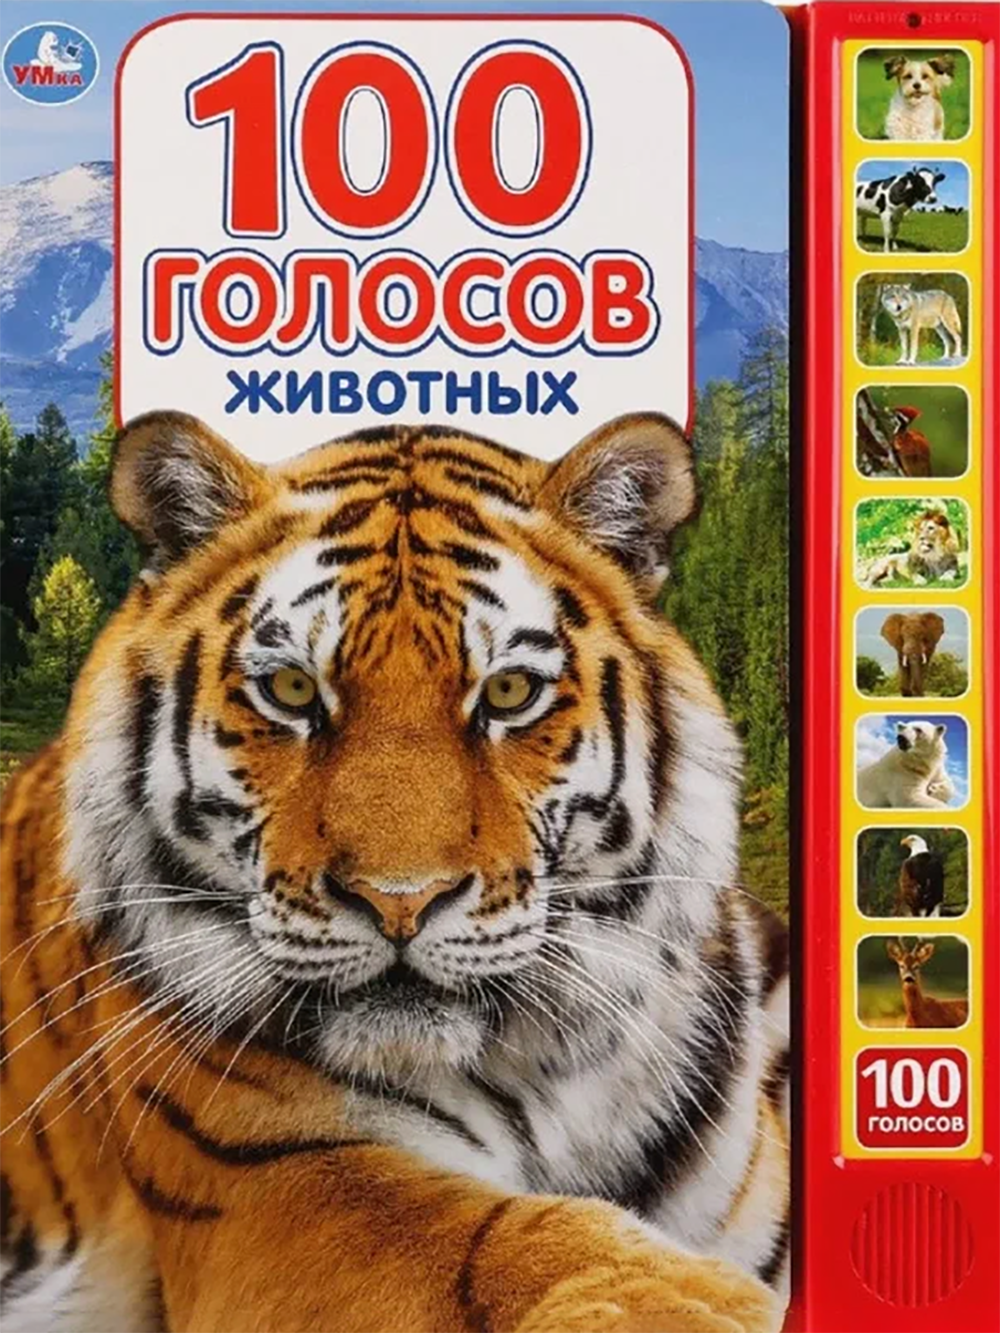 Книжка для сына. Будем изучать звуки, которые издают животные. Источник: umitoy.ru